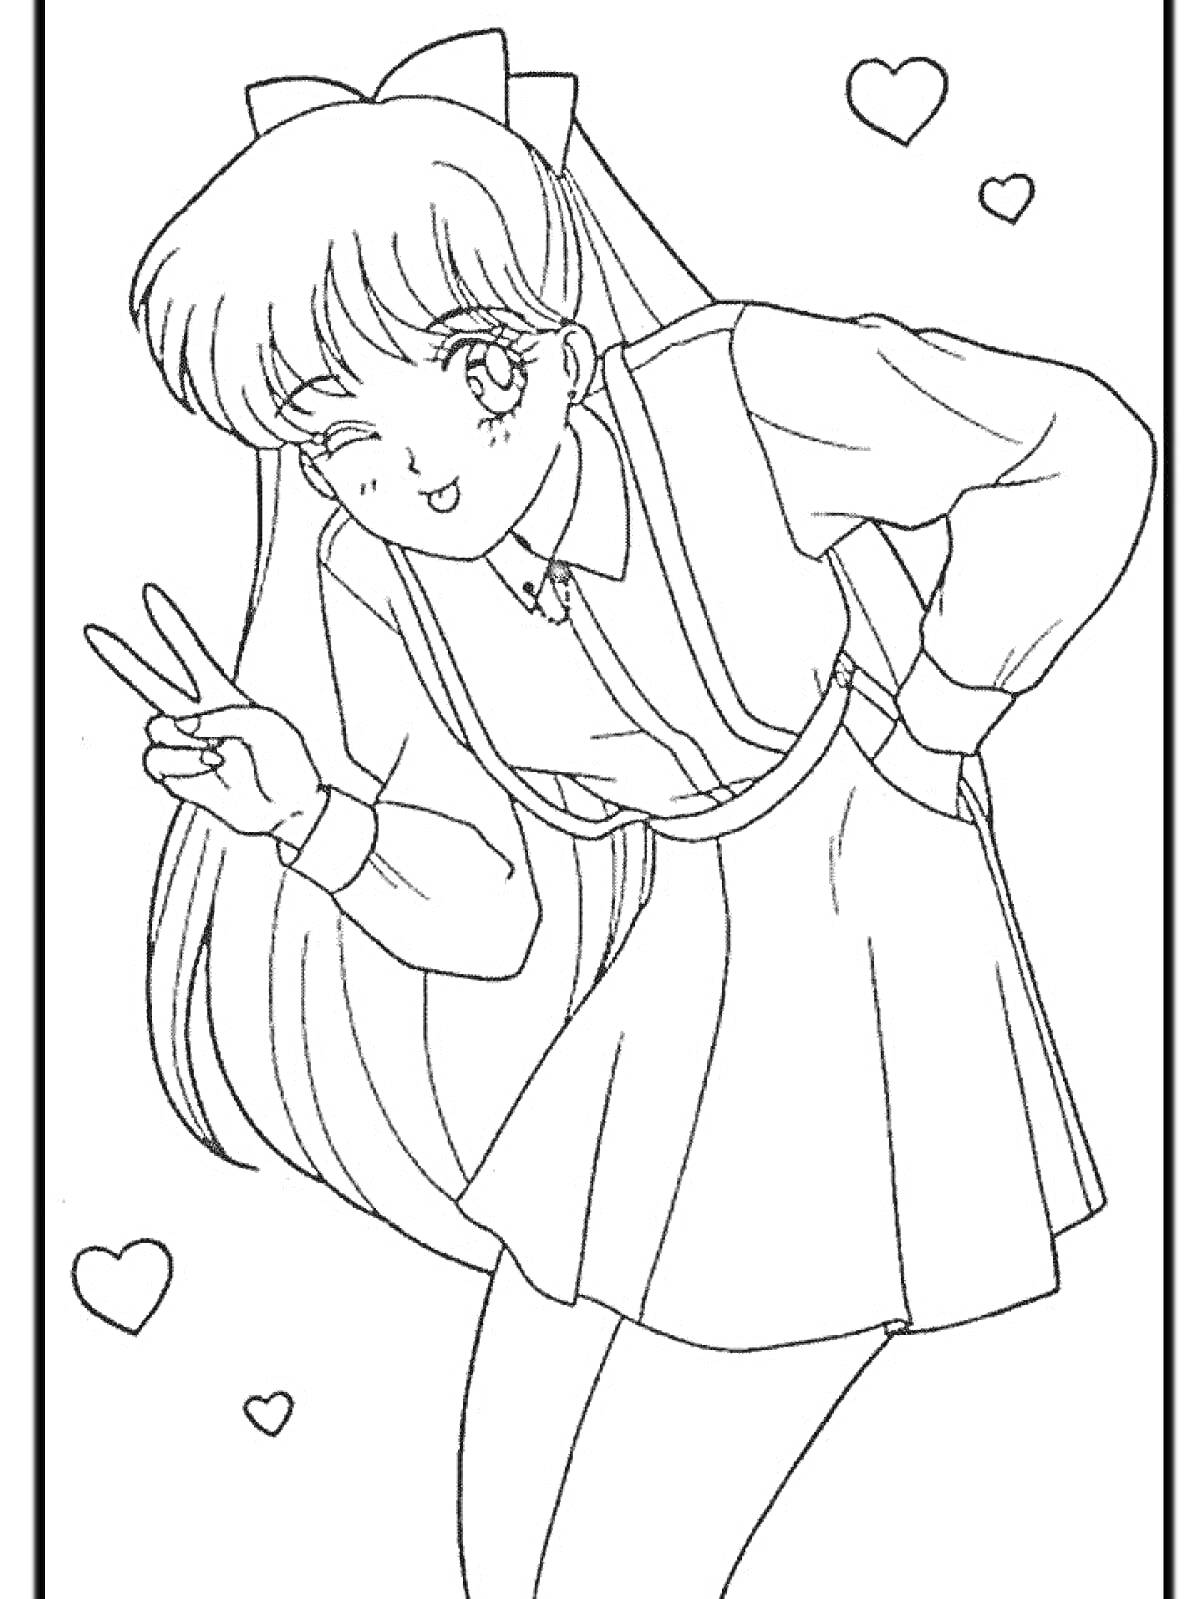 Раскраска Девочка-аниме с длинными волосами, в школьной форме, показывает знак «мир» и подмигивает, с сердечками вокруг.